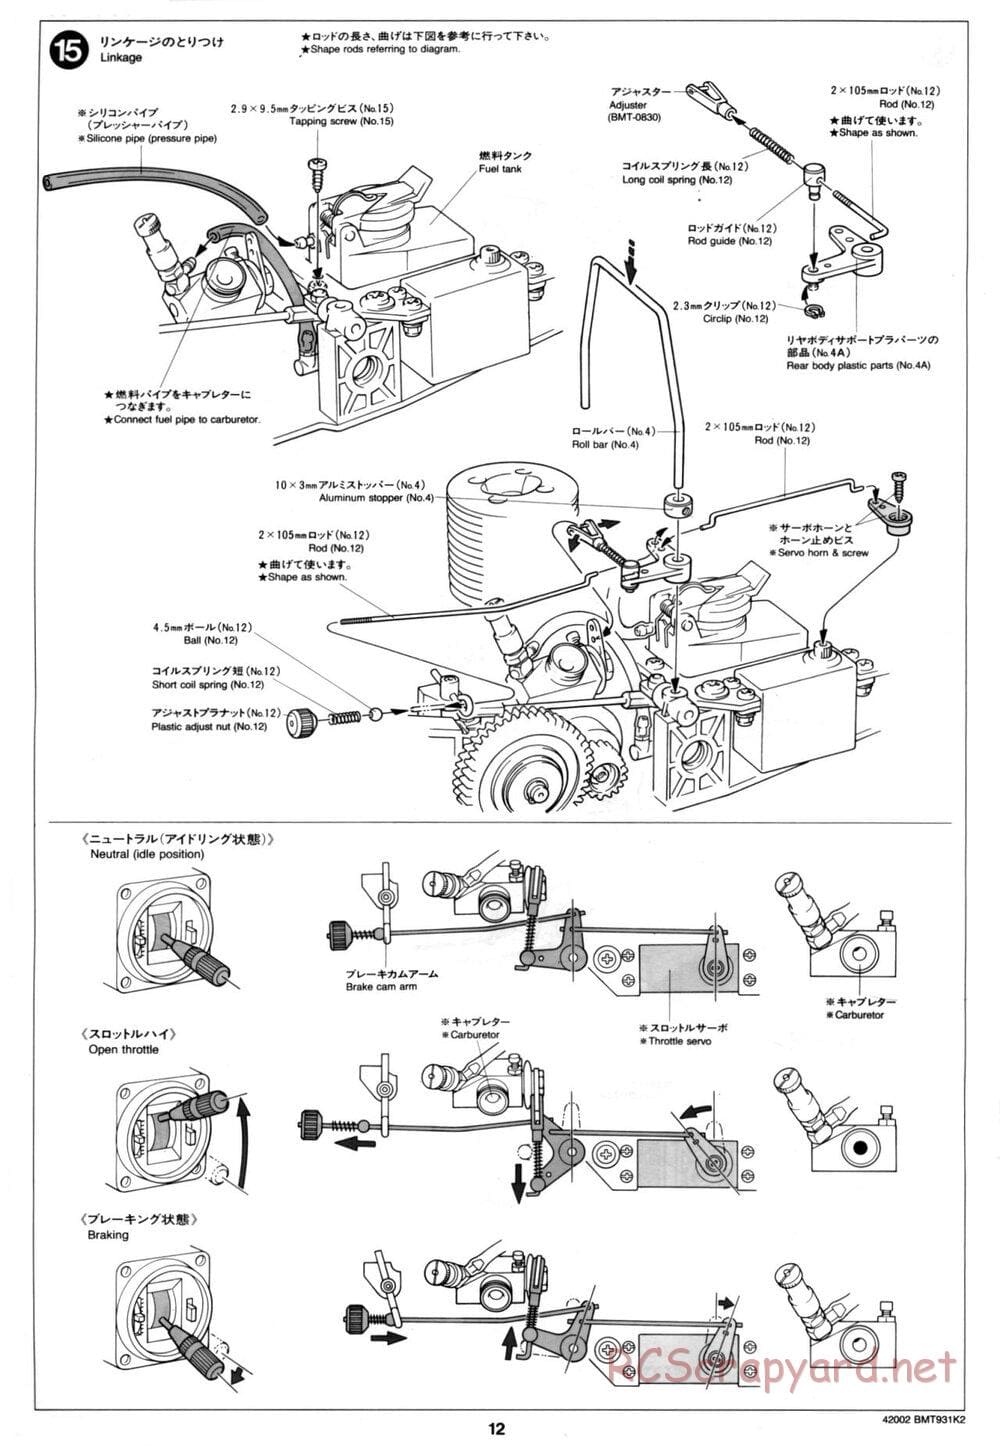 Tamiya - BMT 931 K2 Racing Chassis - Manual - Page 12